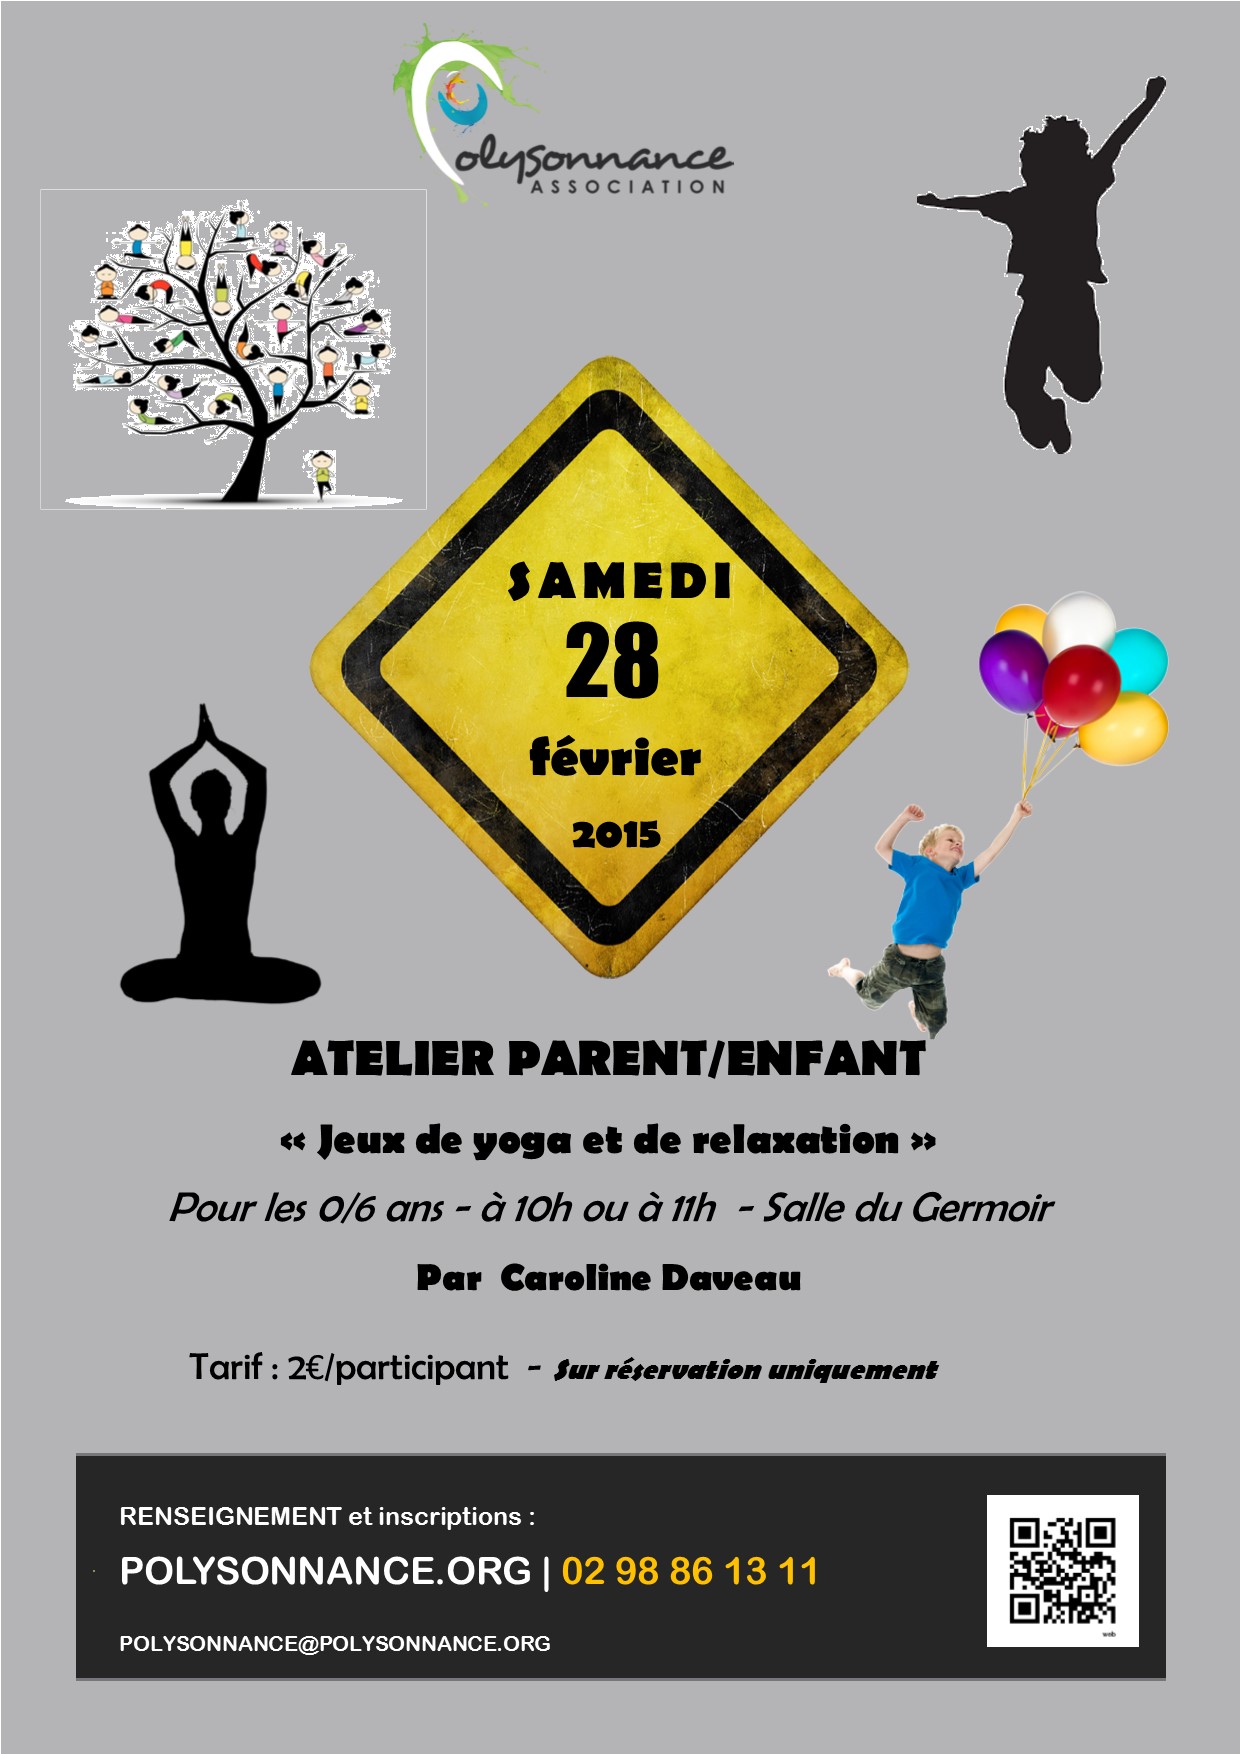 Atelier « Enfants/parents » : Samedi 28 février 2015 au Germoir